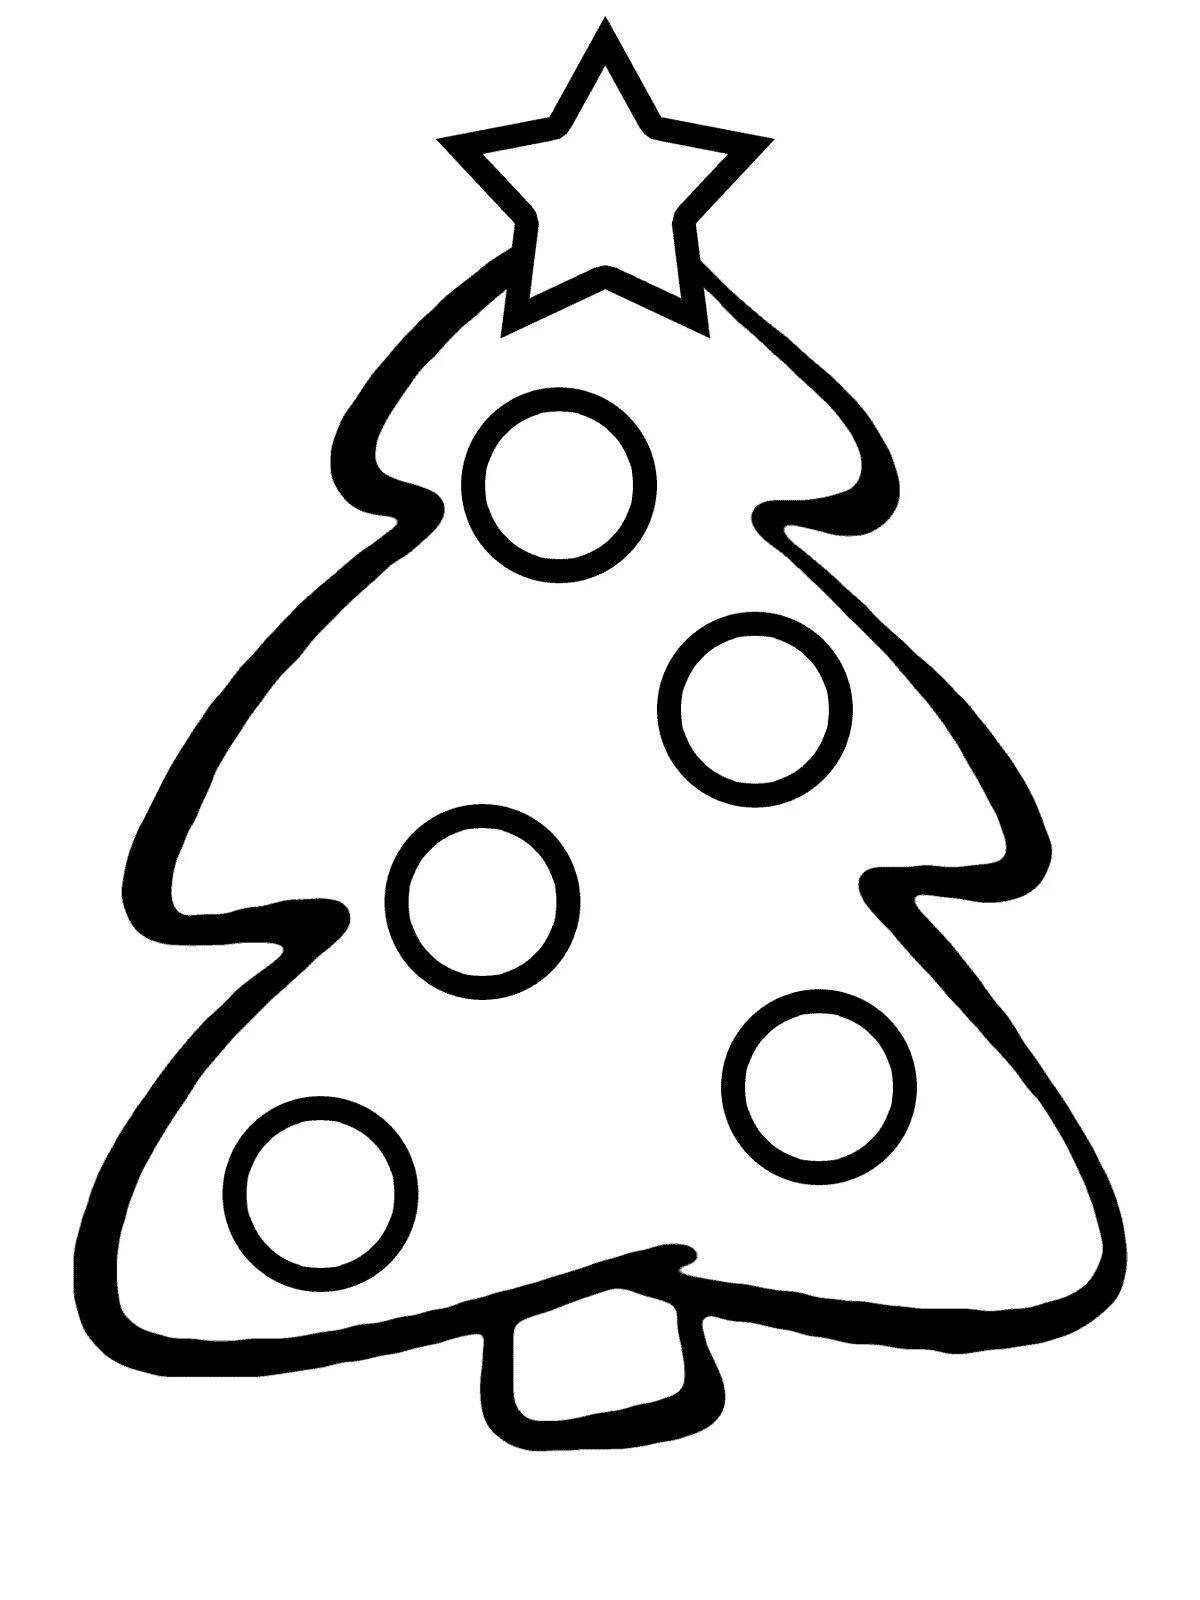 Игривая страница раскраски рождественской елки для детей 6-7 лет